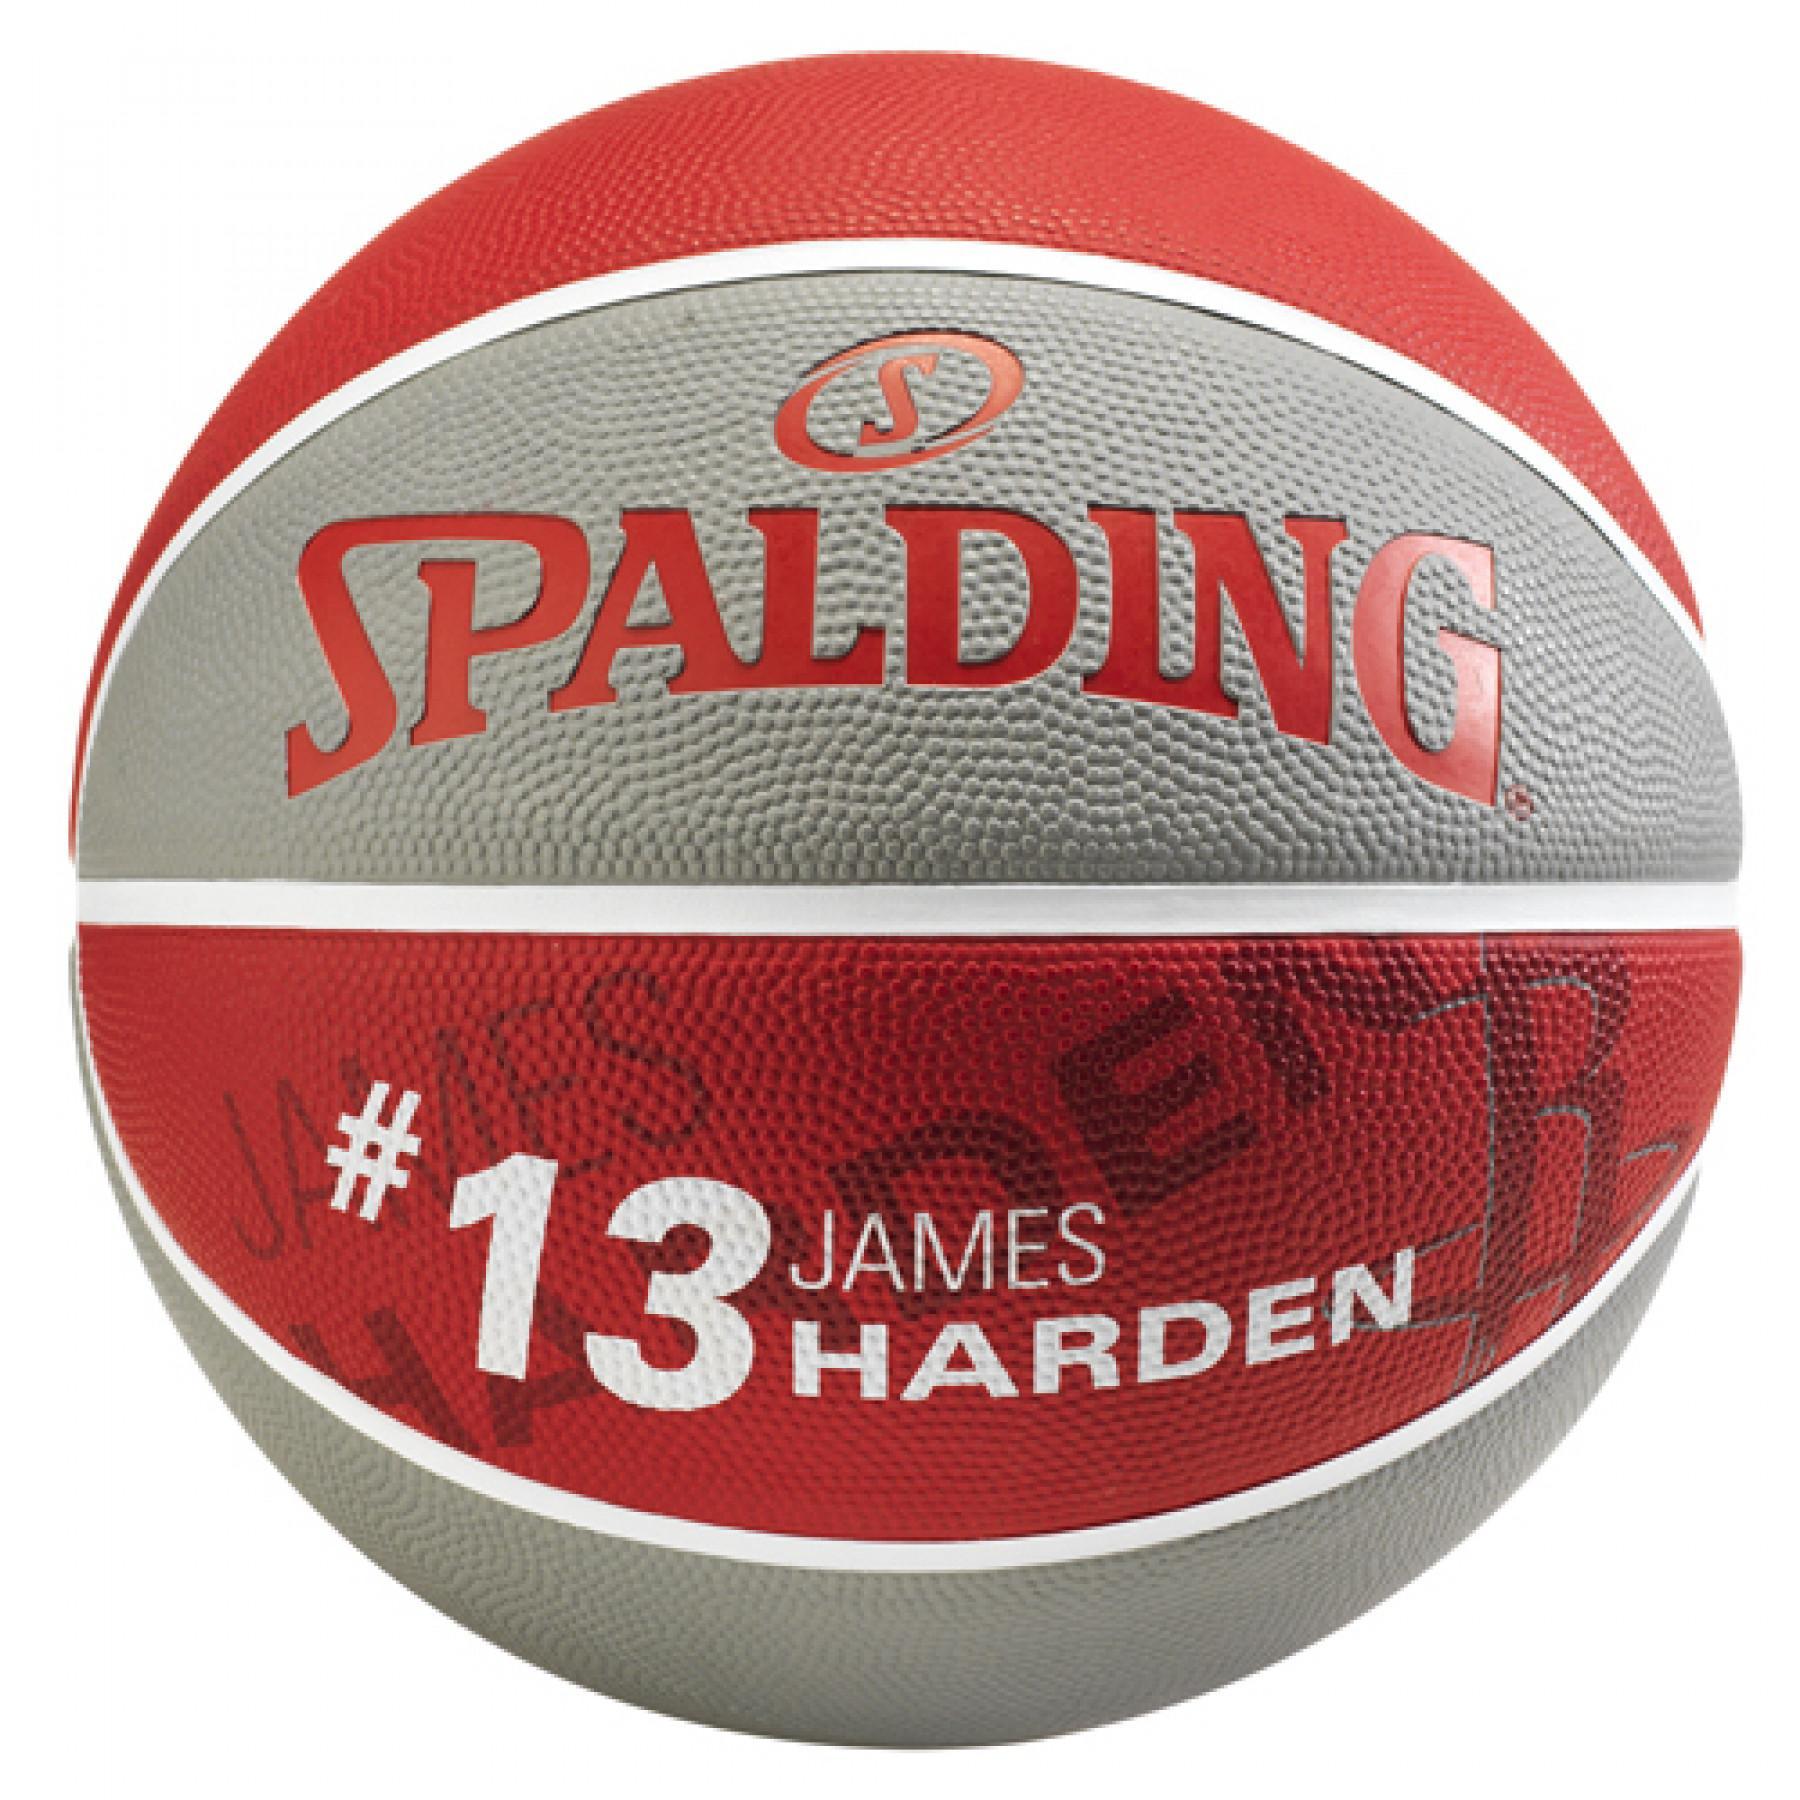 Ballon Spalding Player James Harden